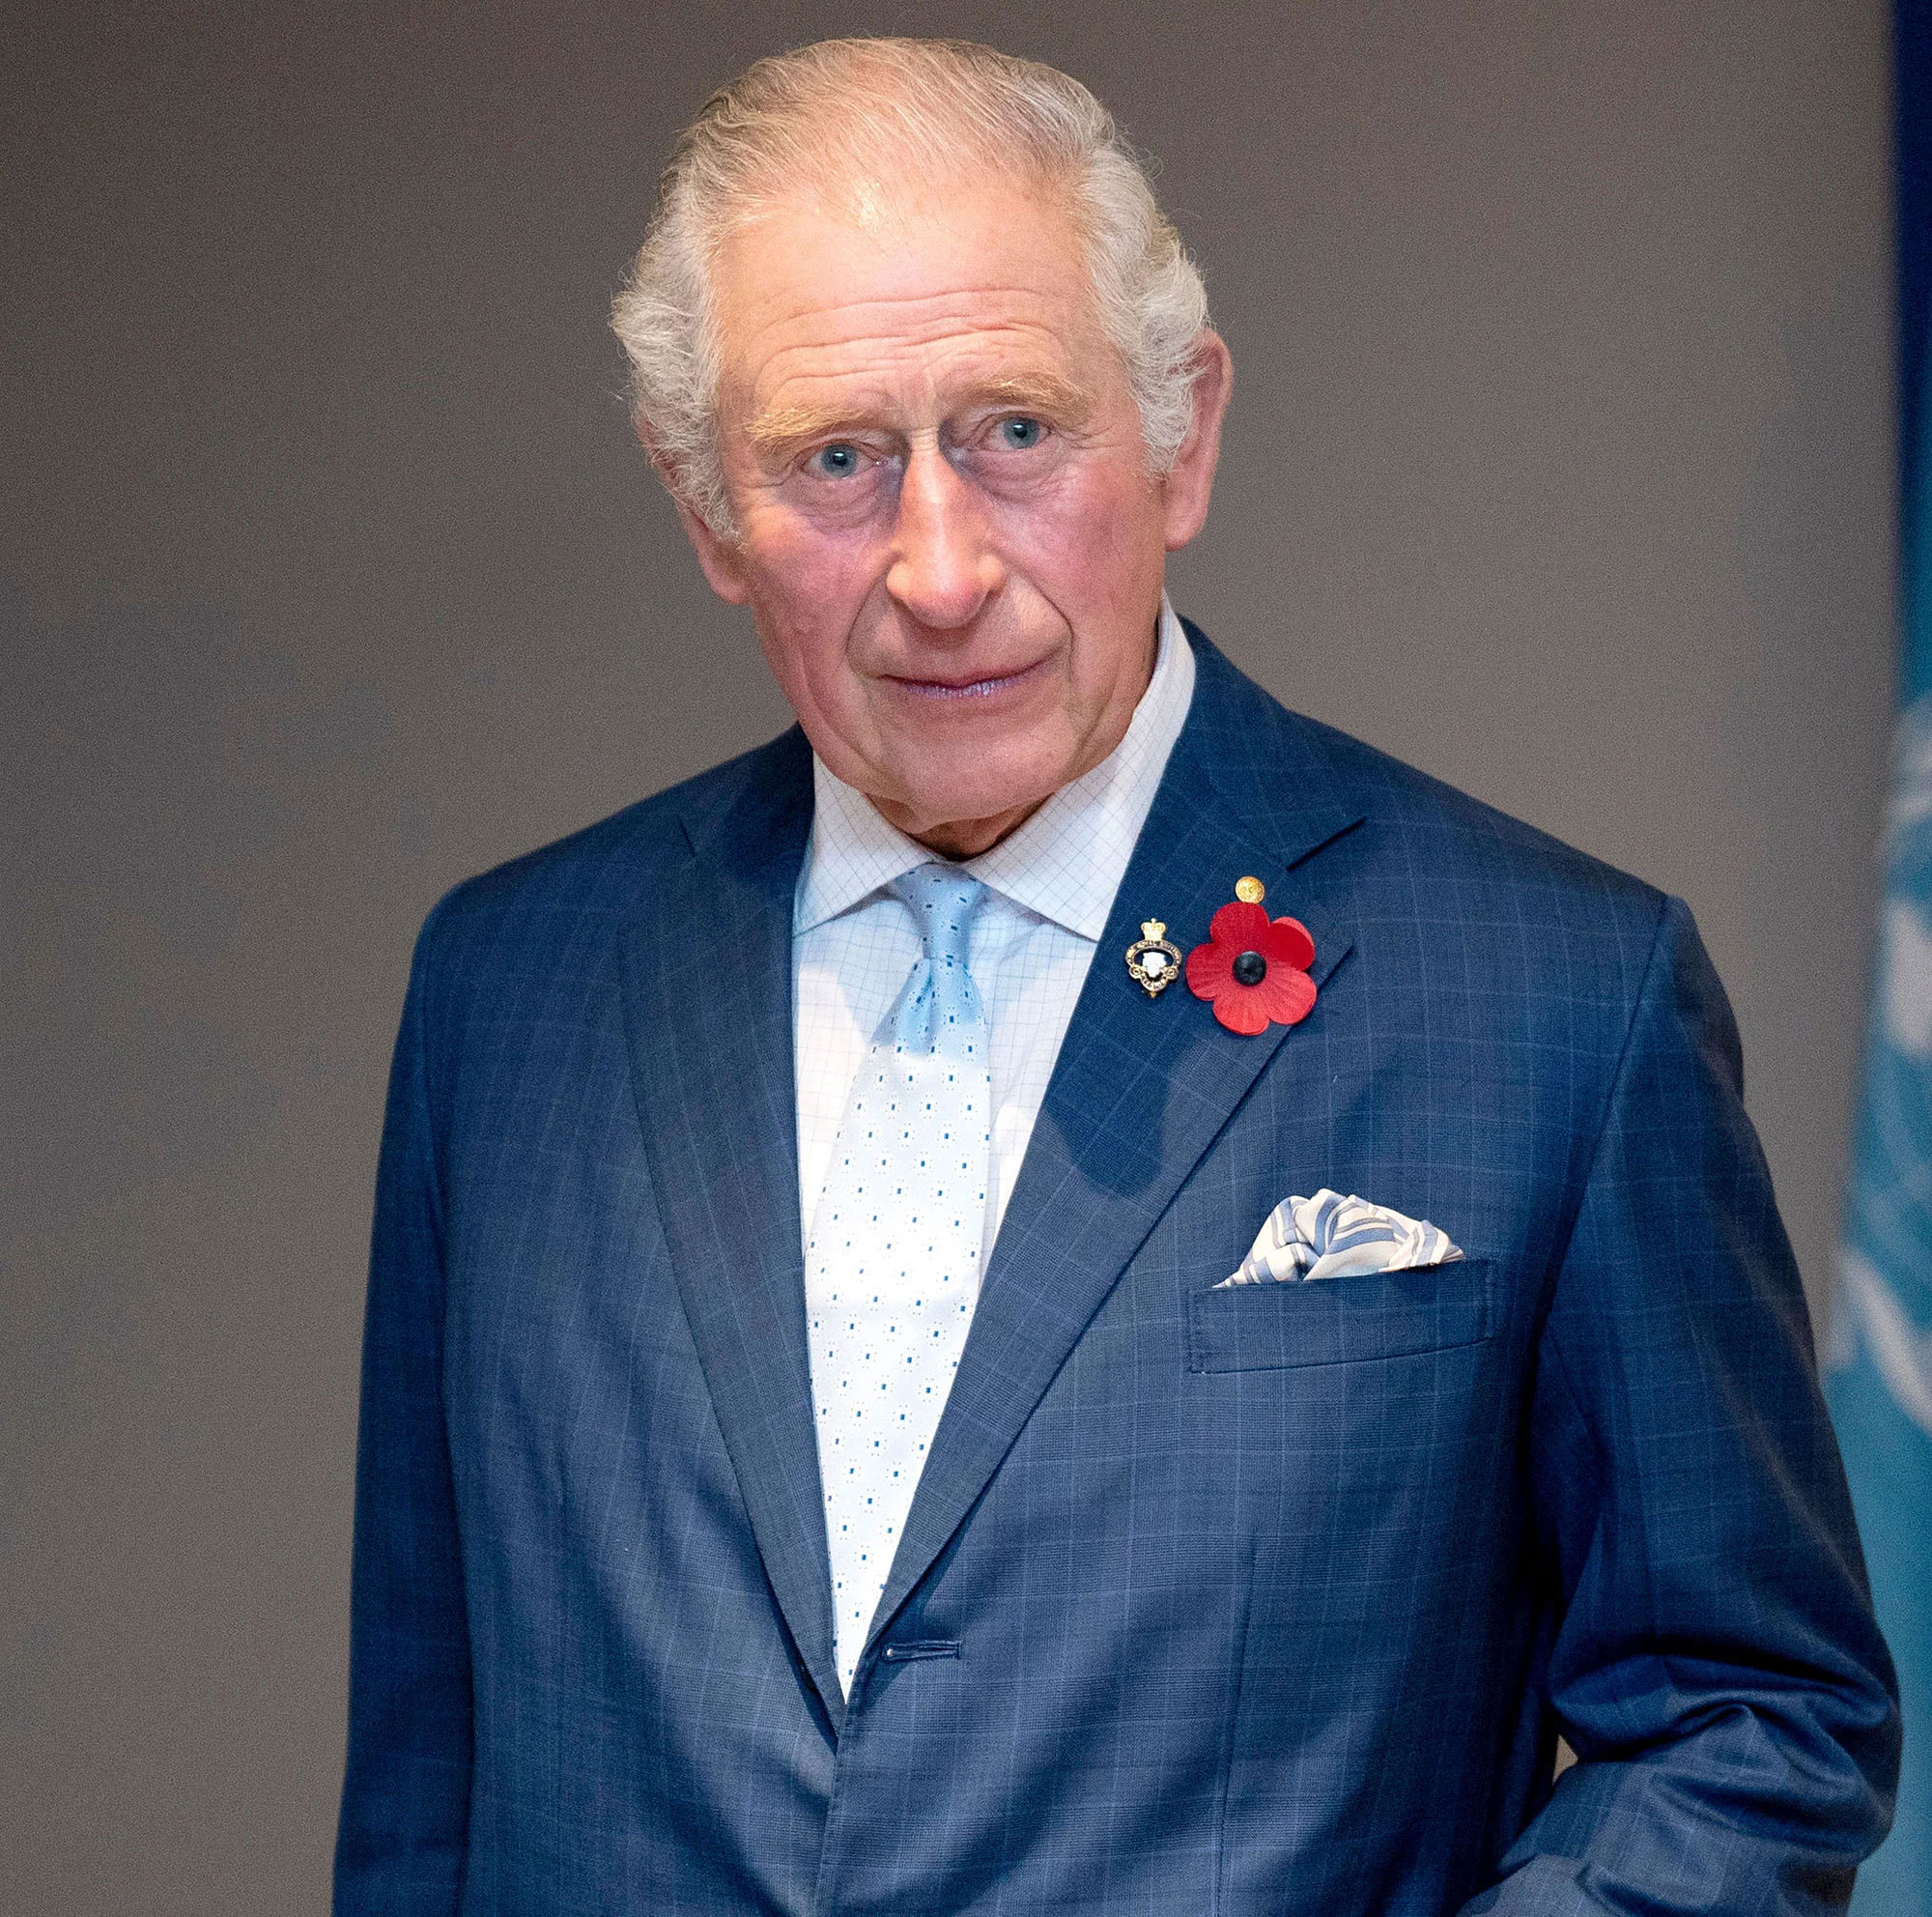 Prince Charles - JohnannFinbar